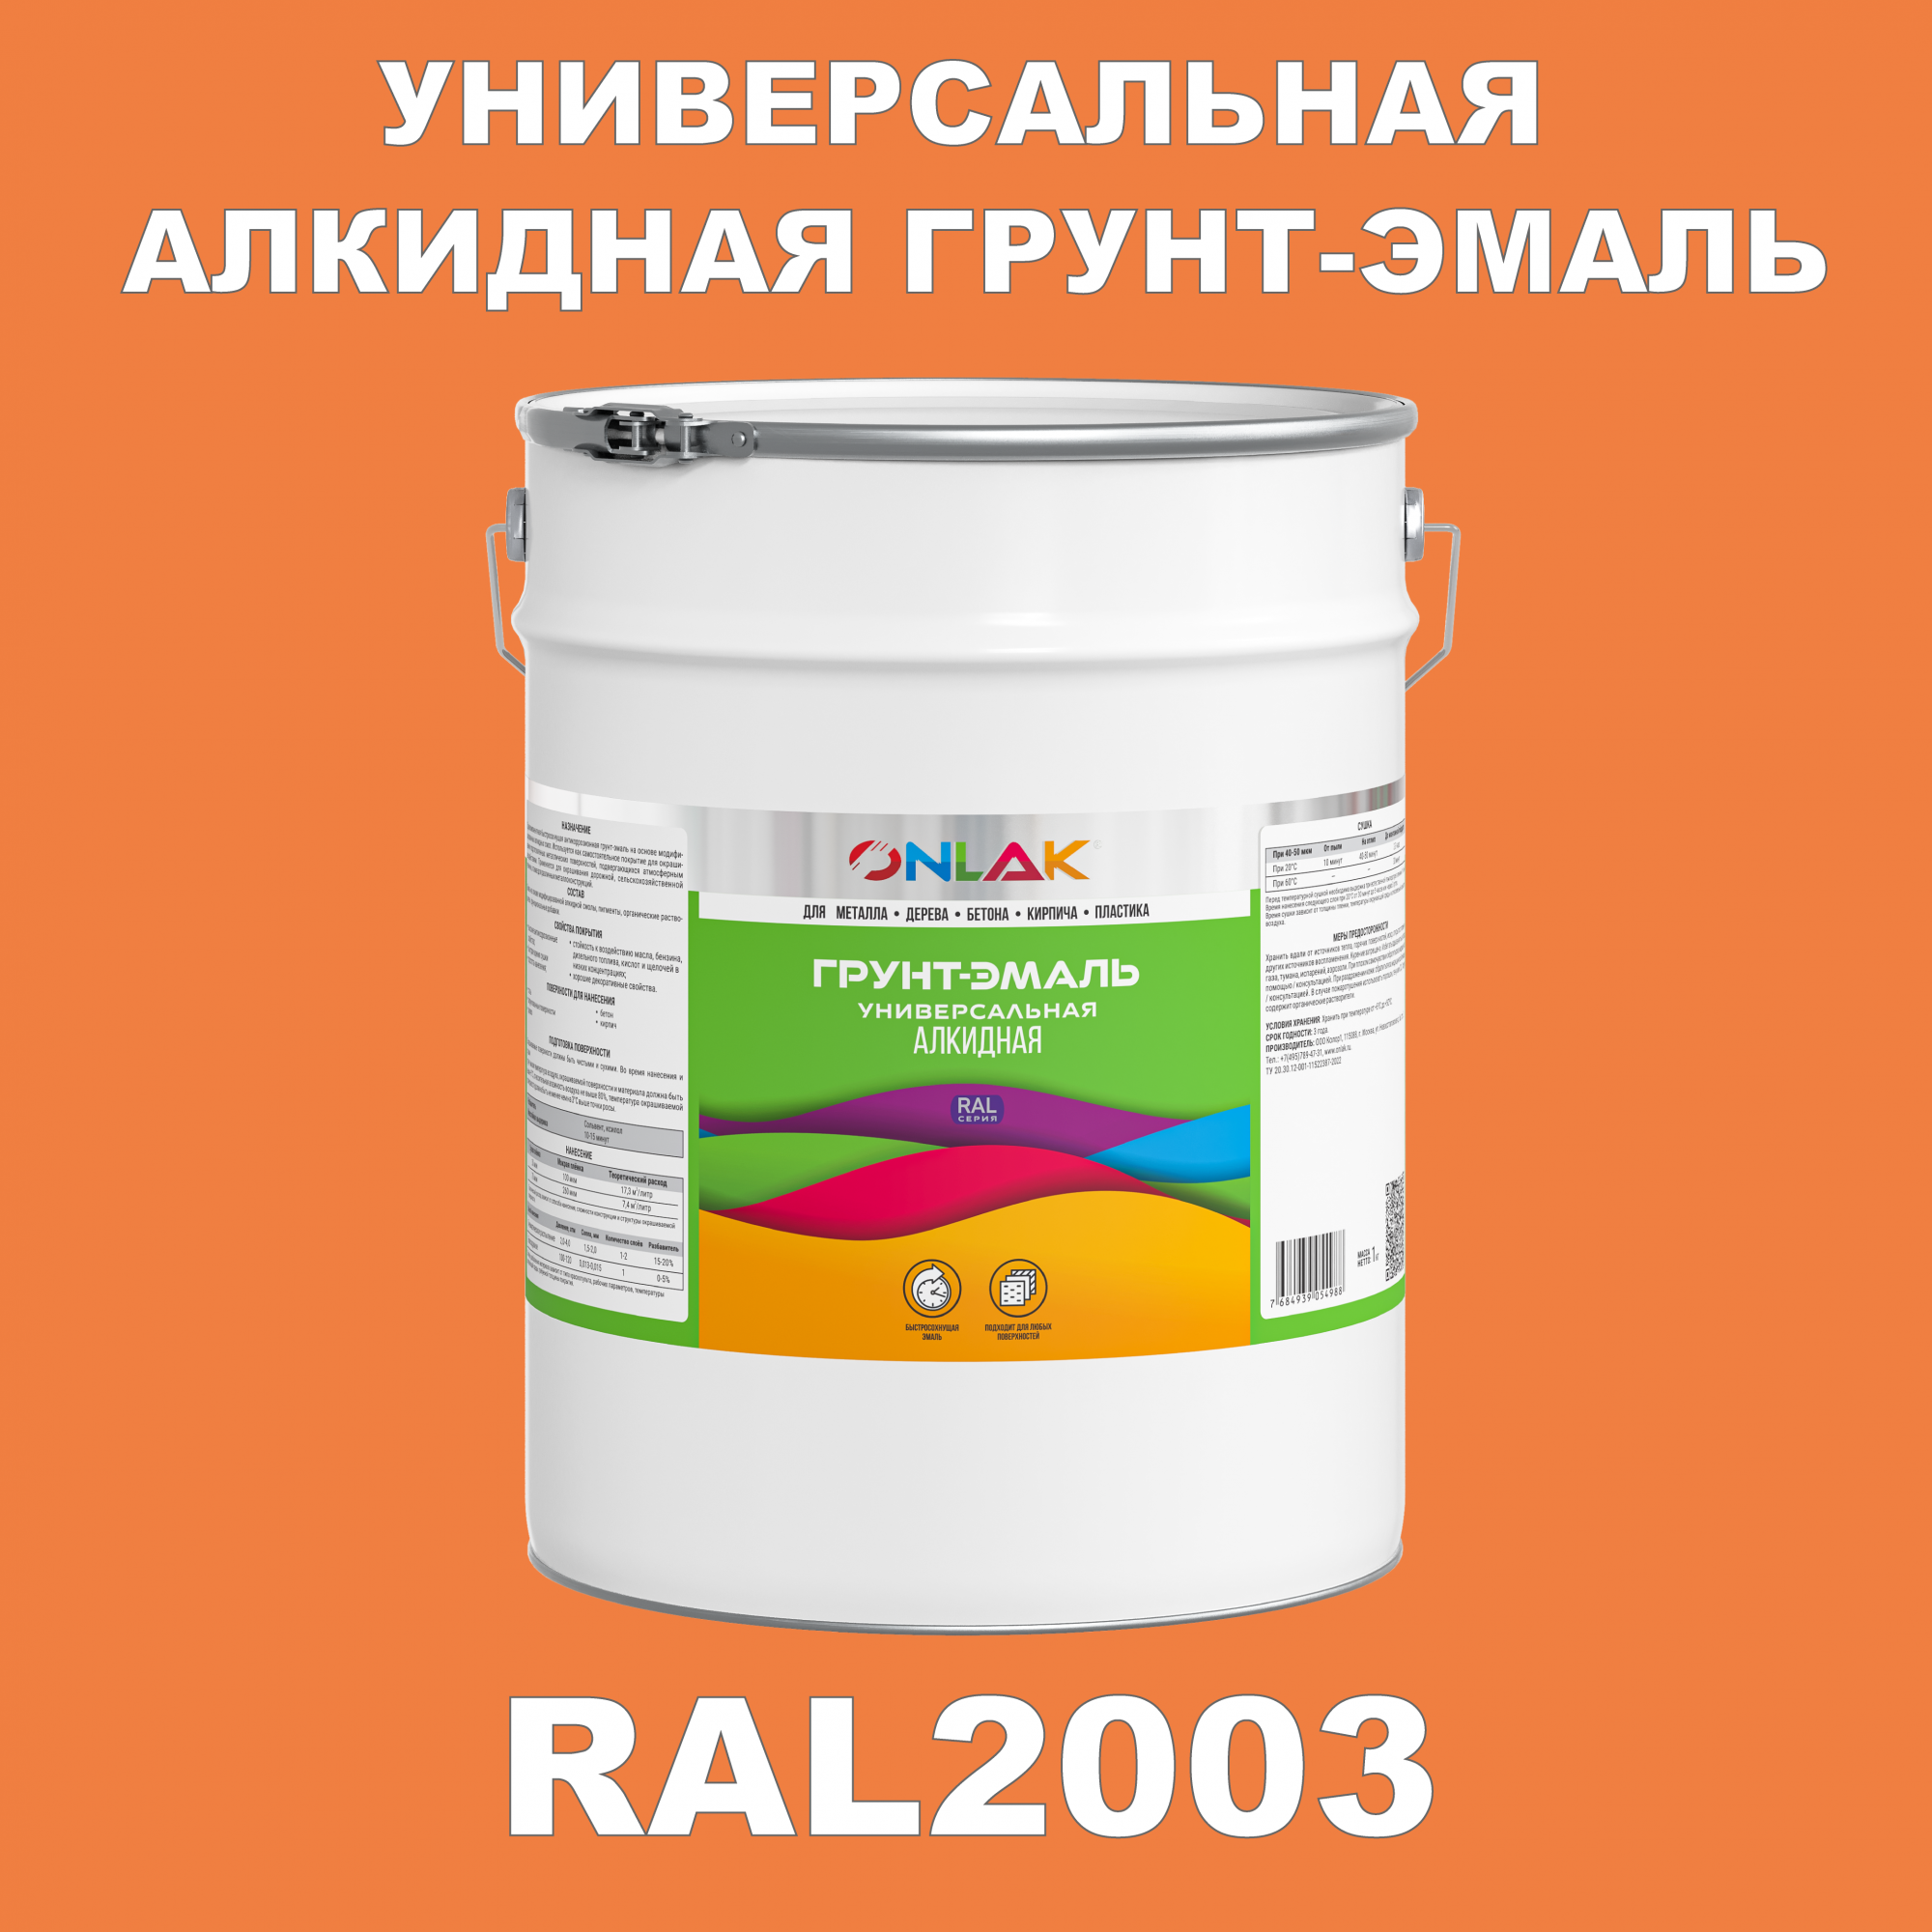 Грунт-эмаль ONLAK 1К RAL2003 антикоррозионная алкидная по металлу по ржавчине 20 кг грунт эмаль yollo по ржавчине алкидная синяя 0 9 кг